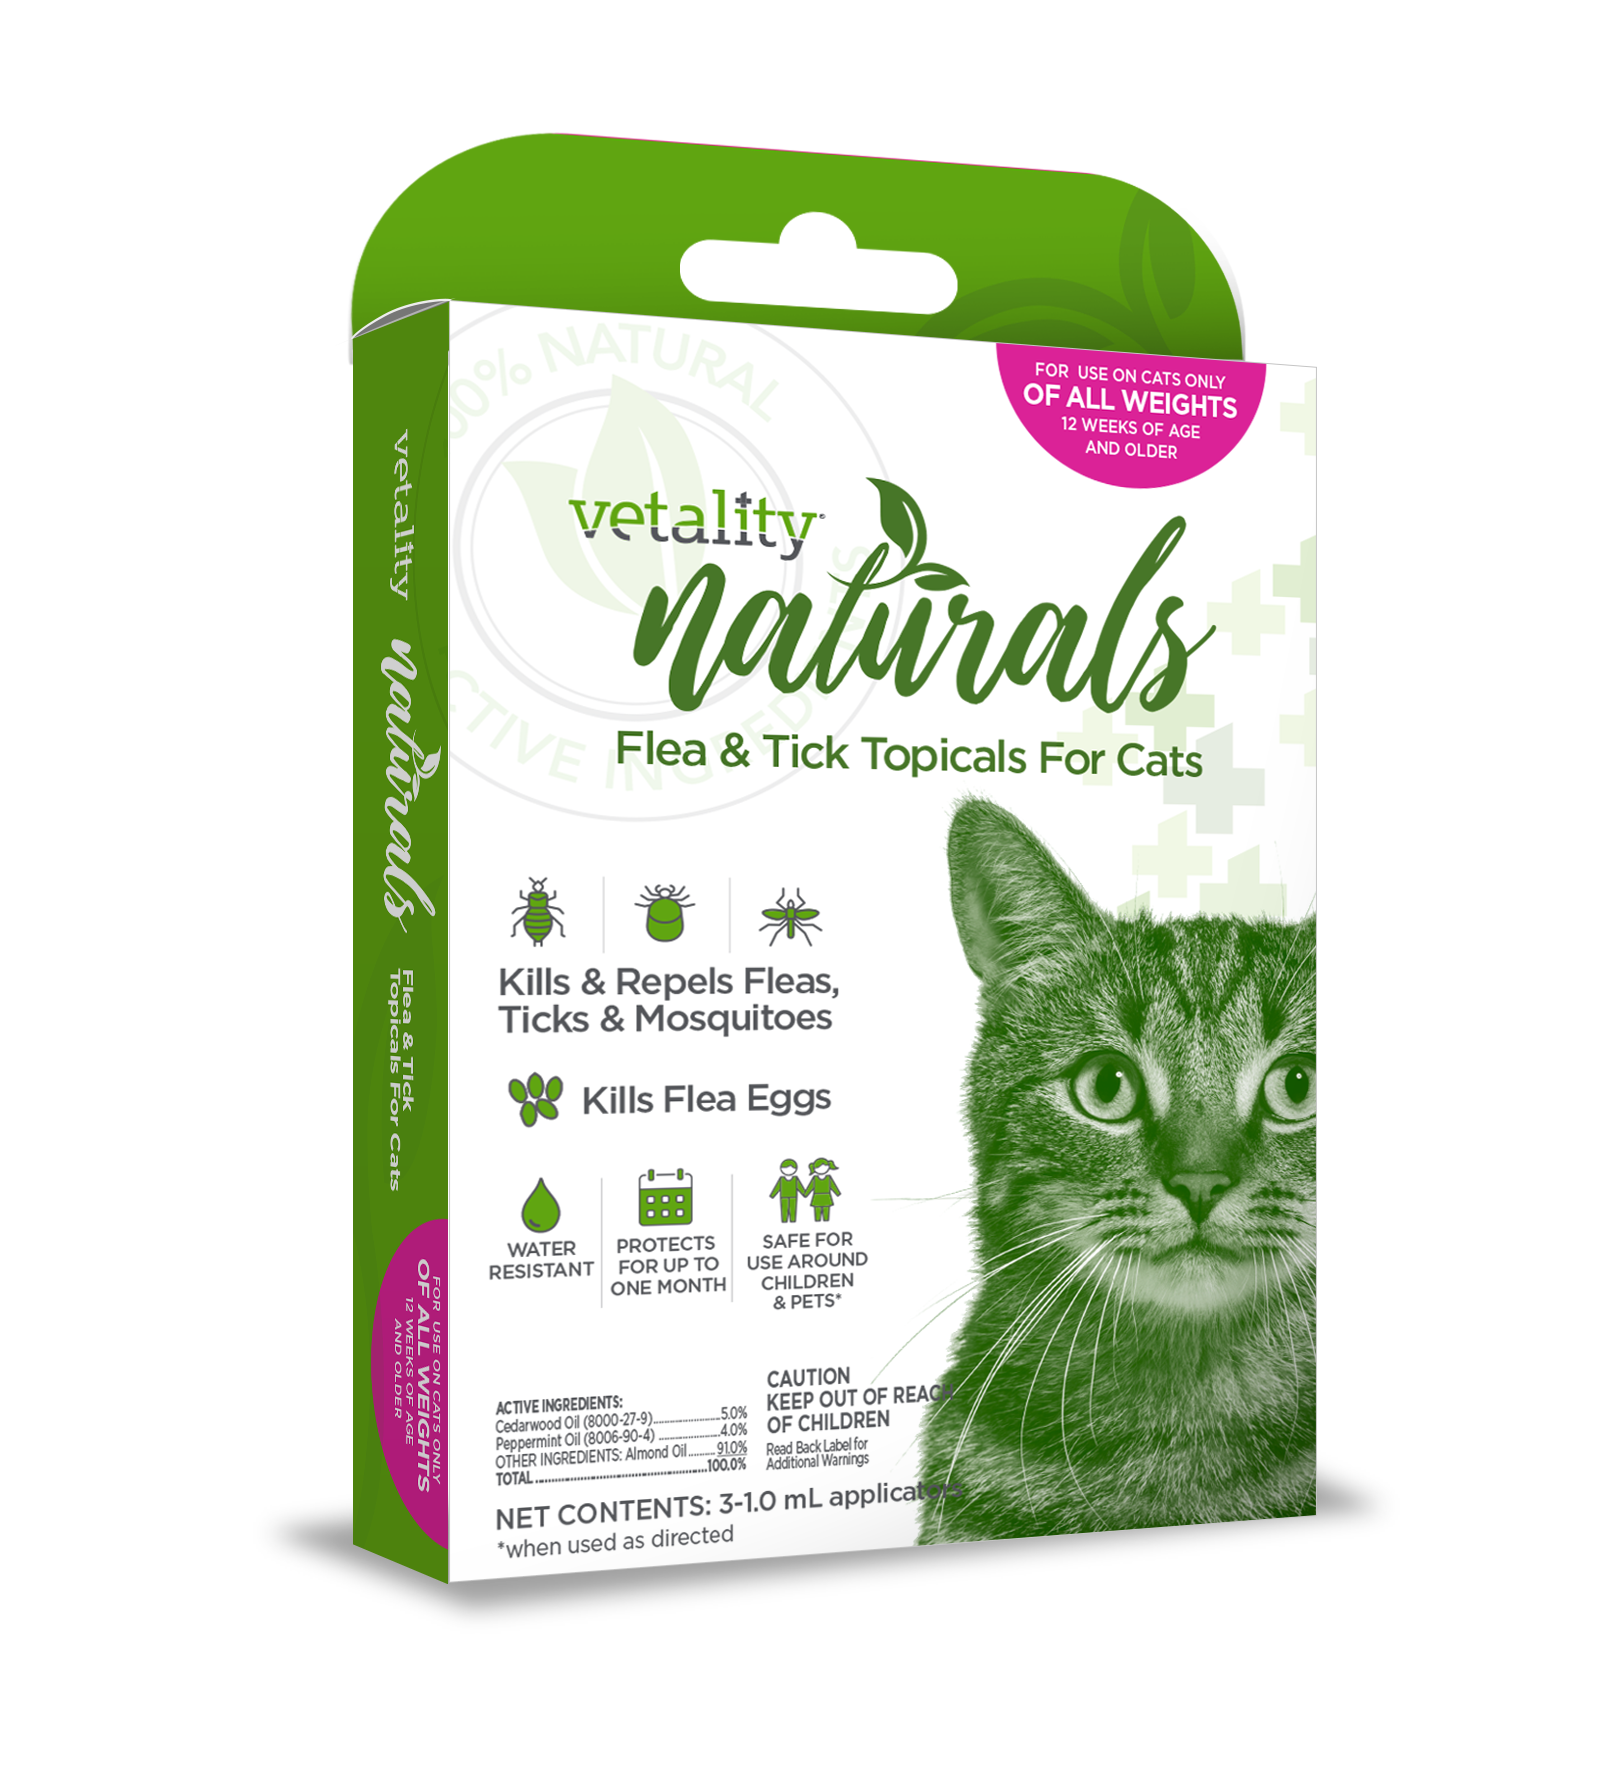 Vetality Naturals Flea & Tick Topicals for Cats - Vetality